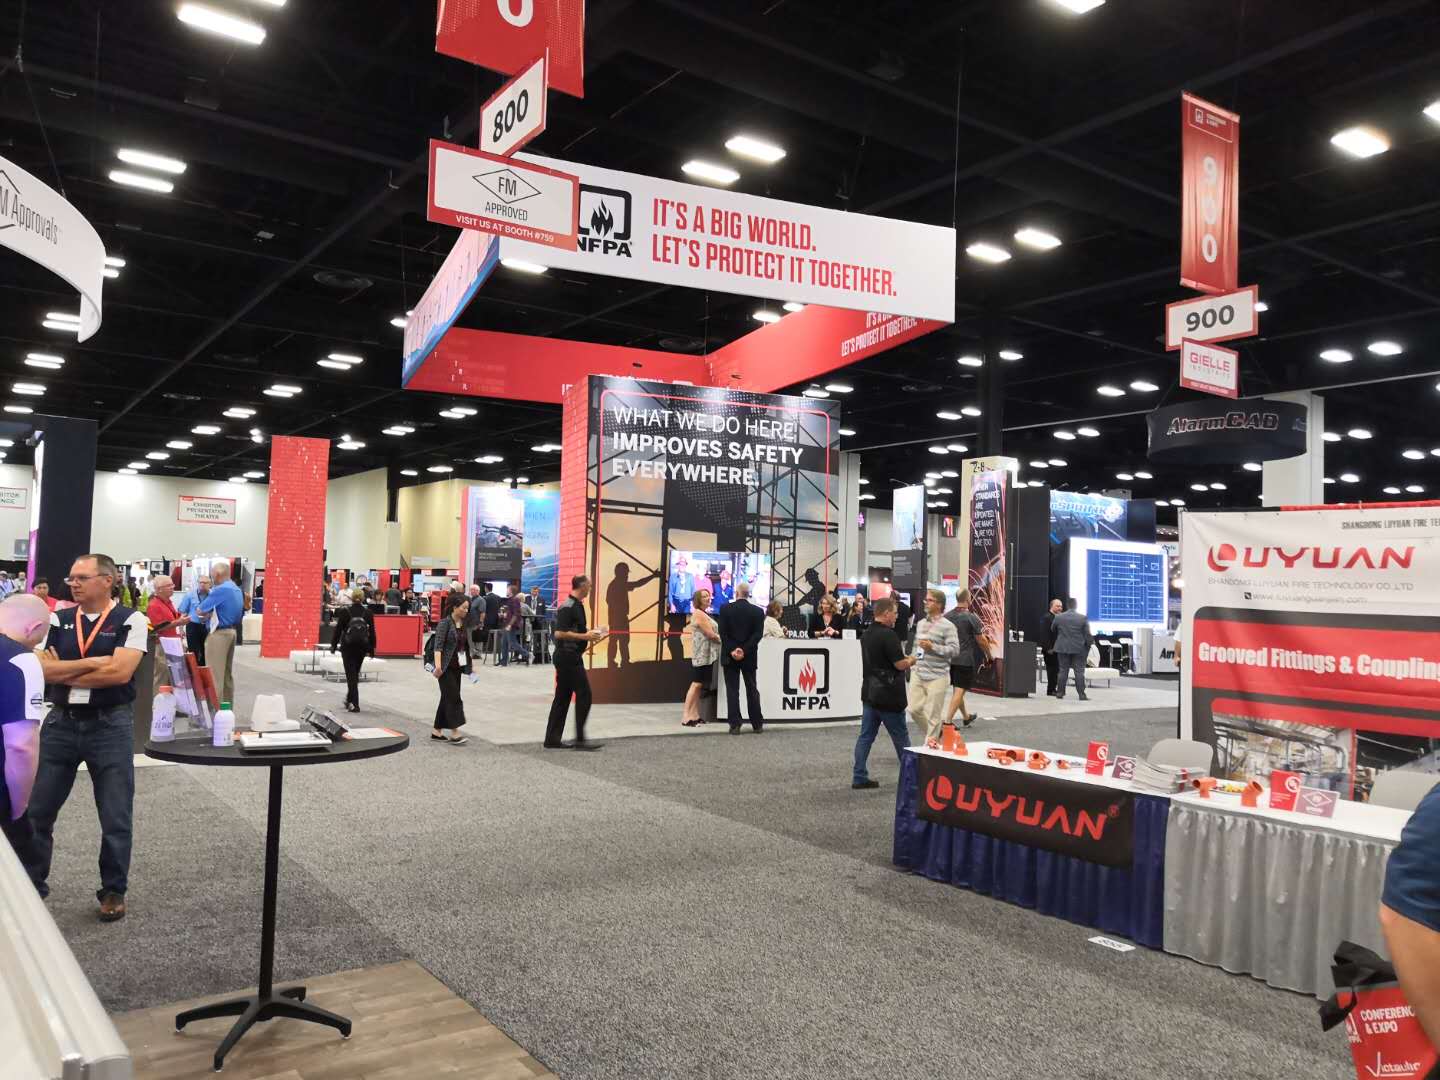 LUYUAN estuvo presente en la NFPA Conference & Expo 2019.